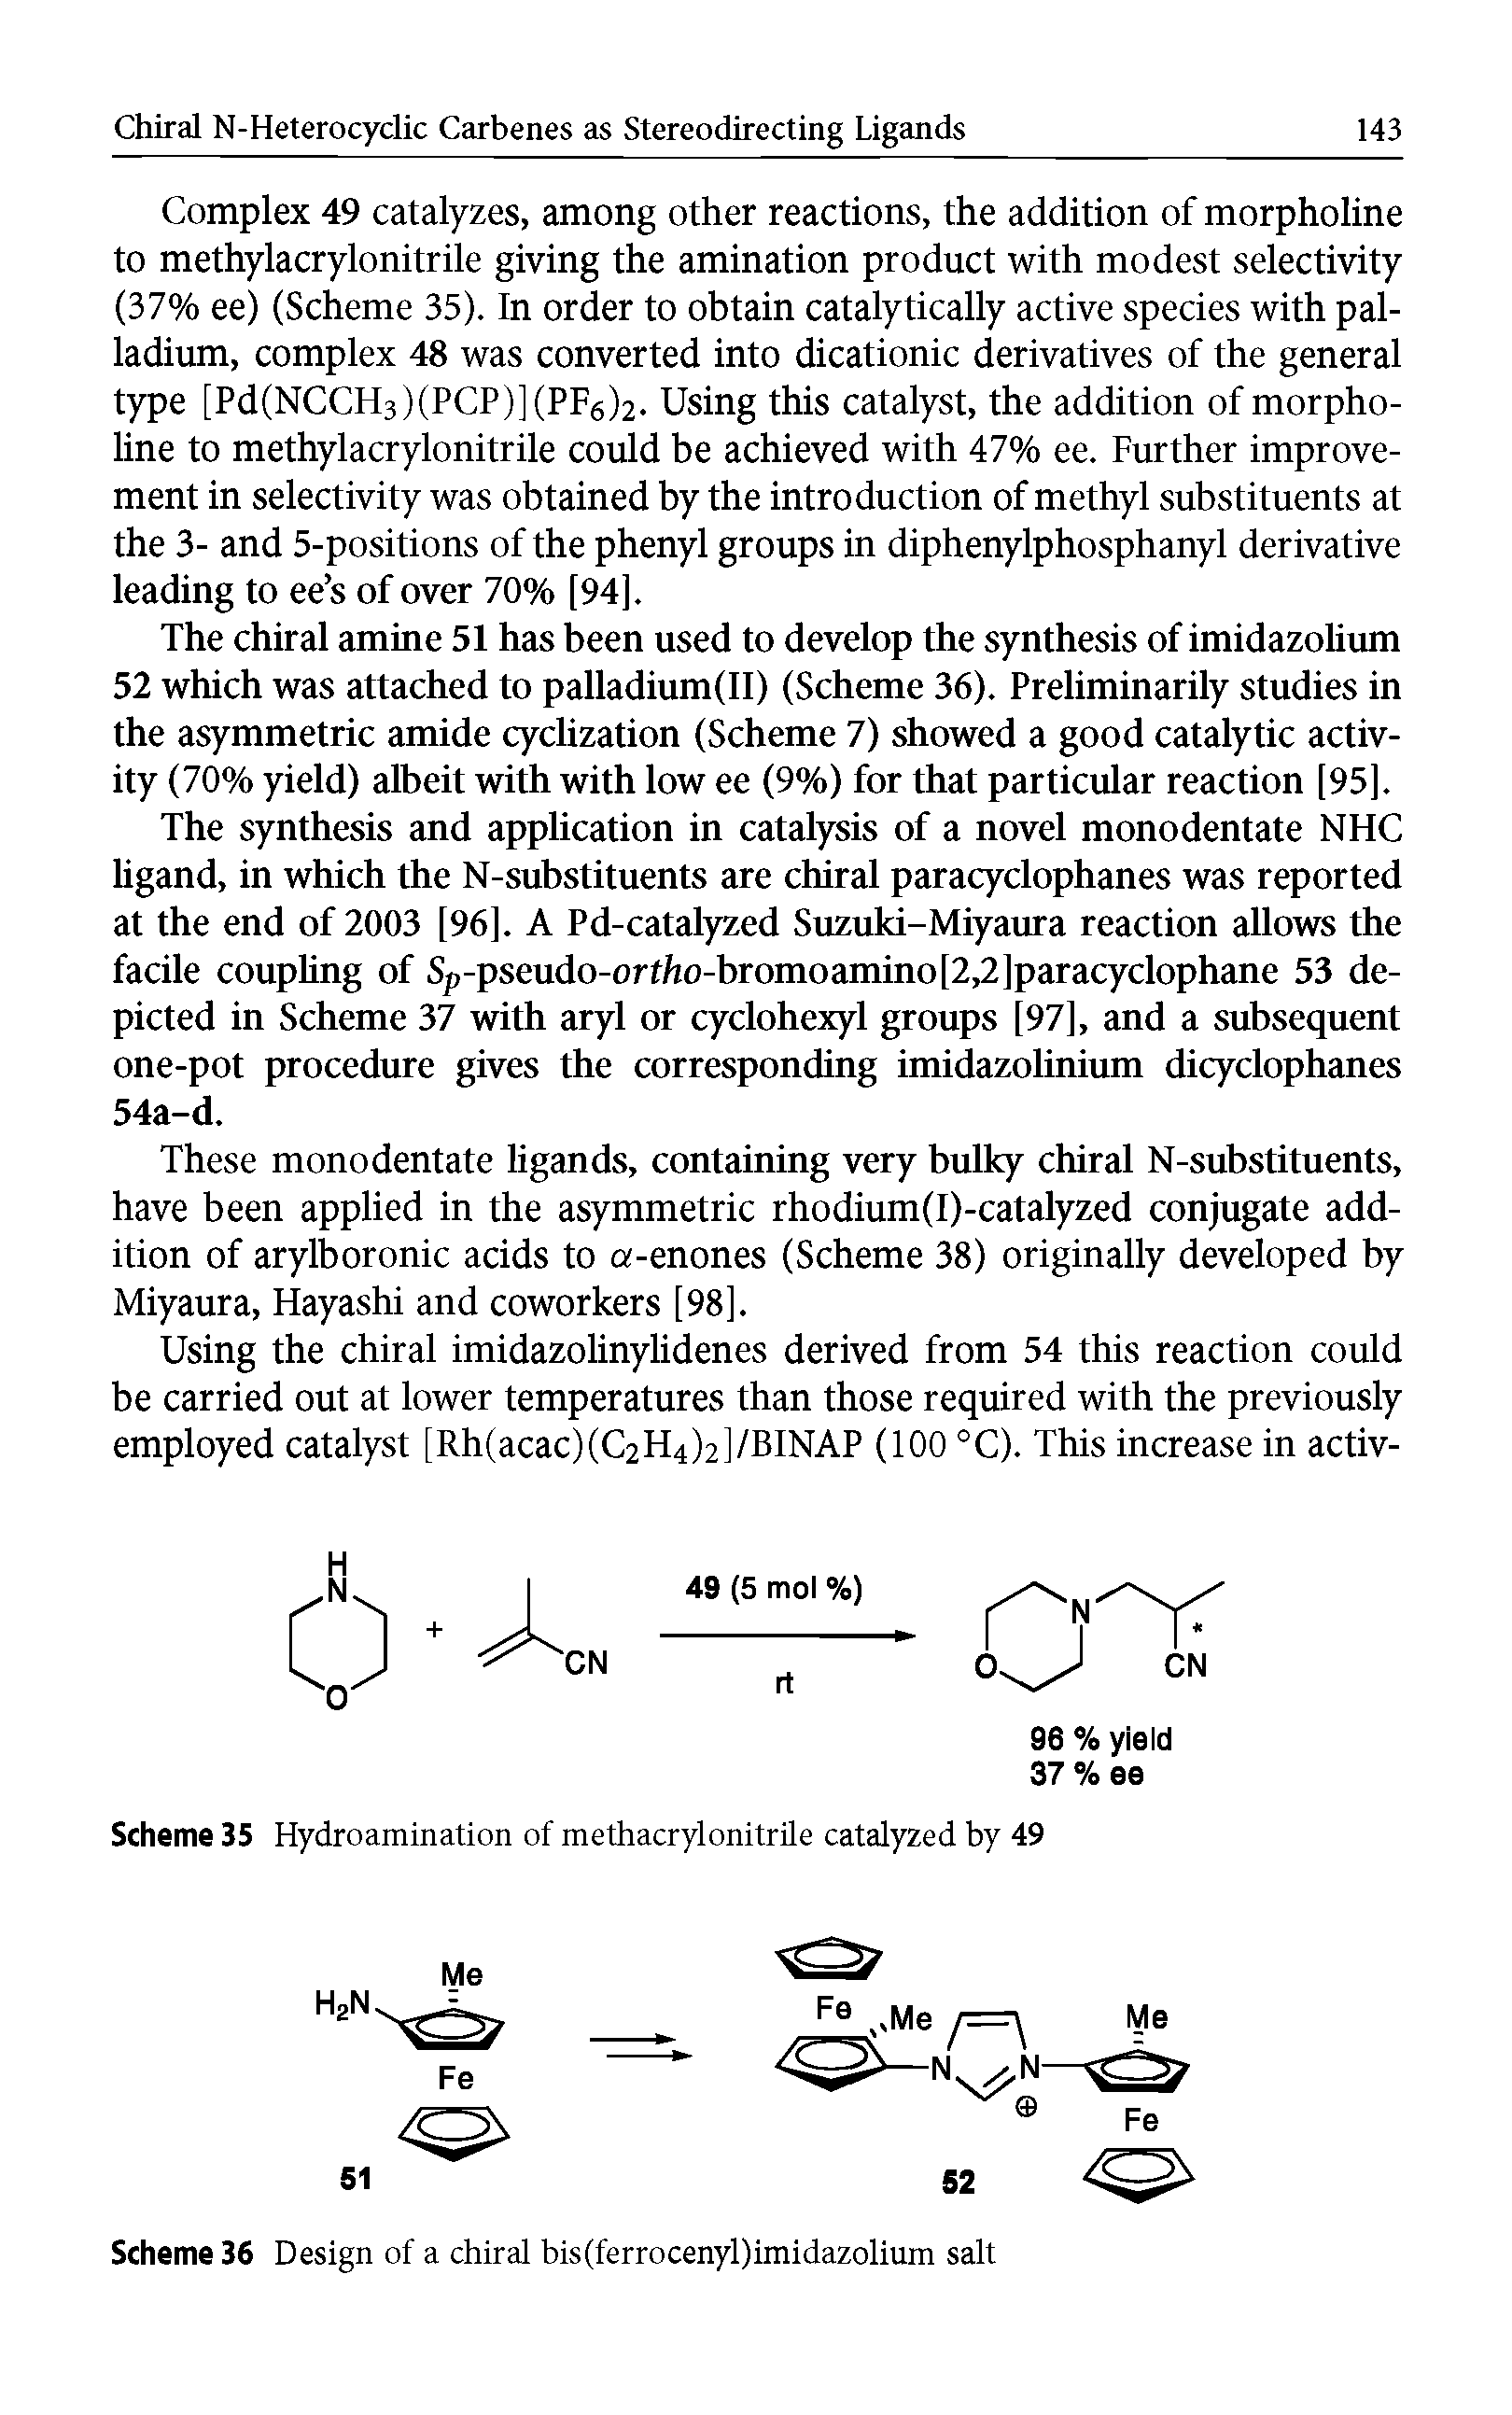 Scheme 36 Design of a chiral bis(ferrocenyl)imidazolium salt...